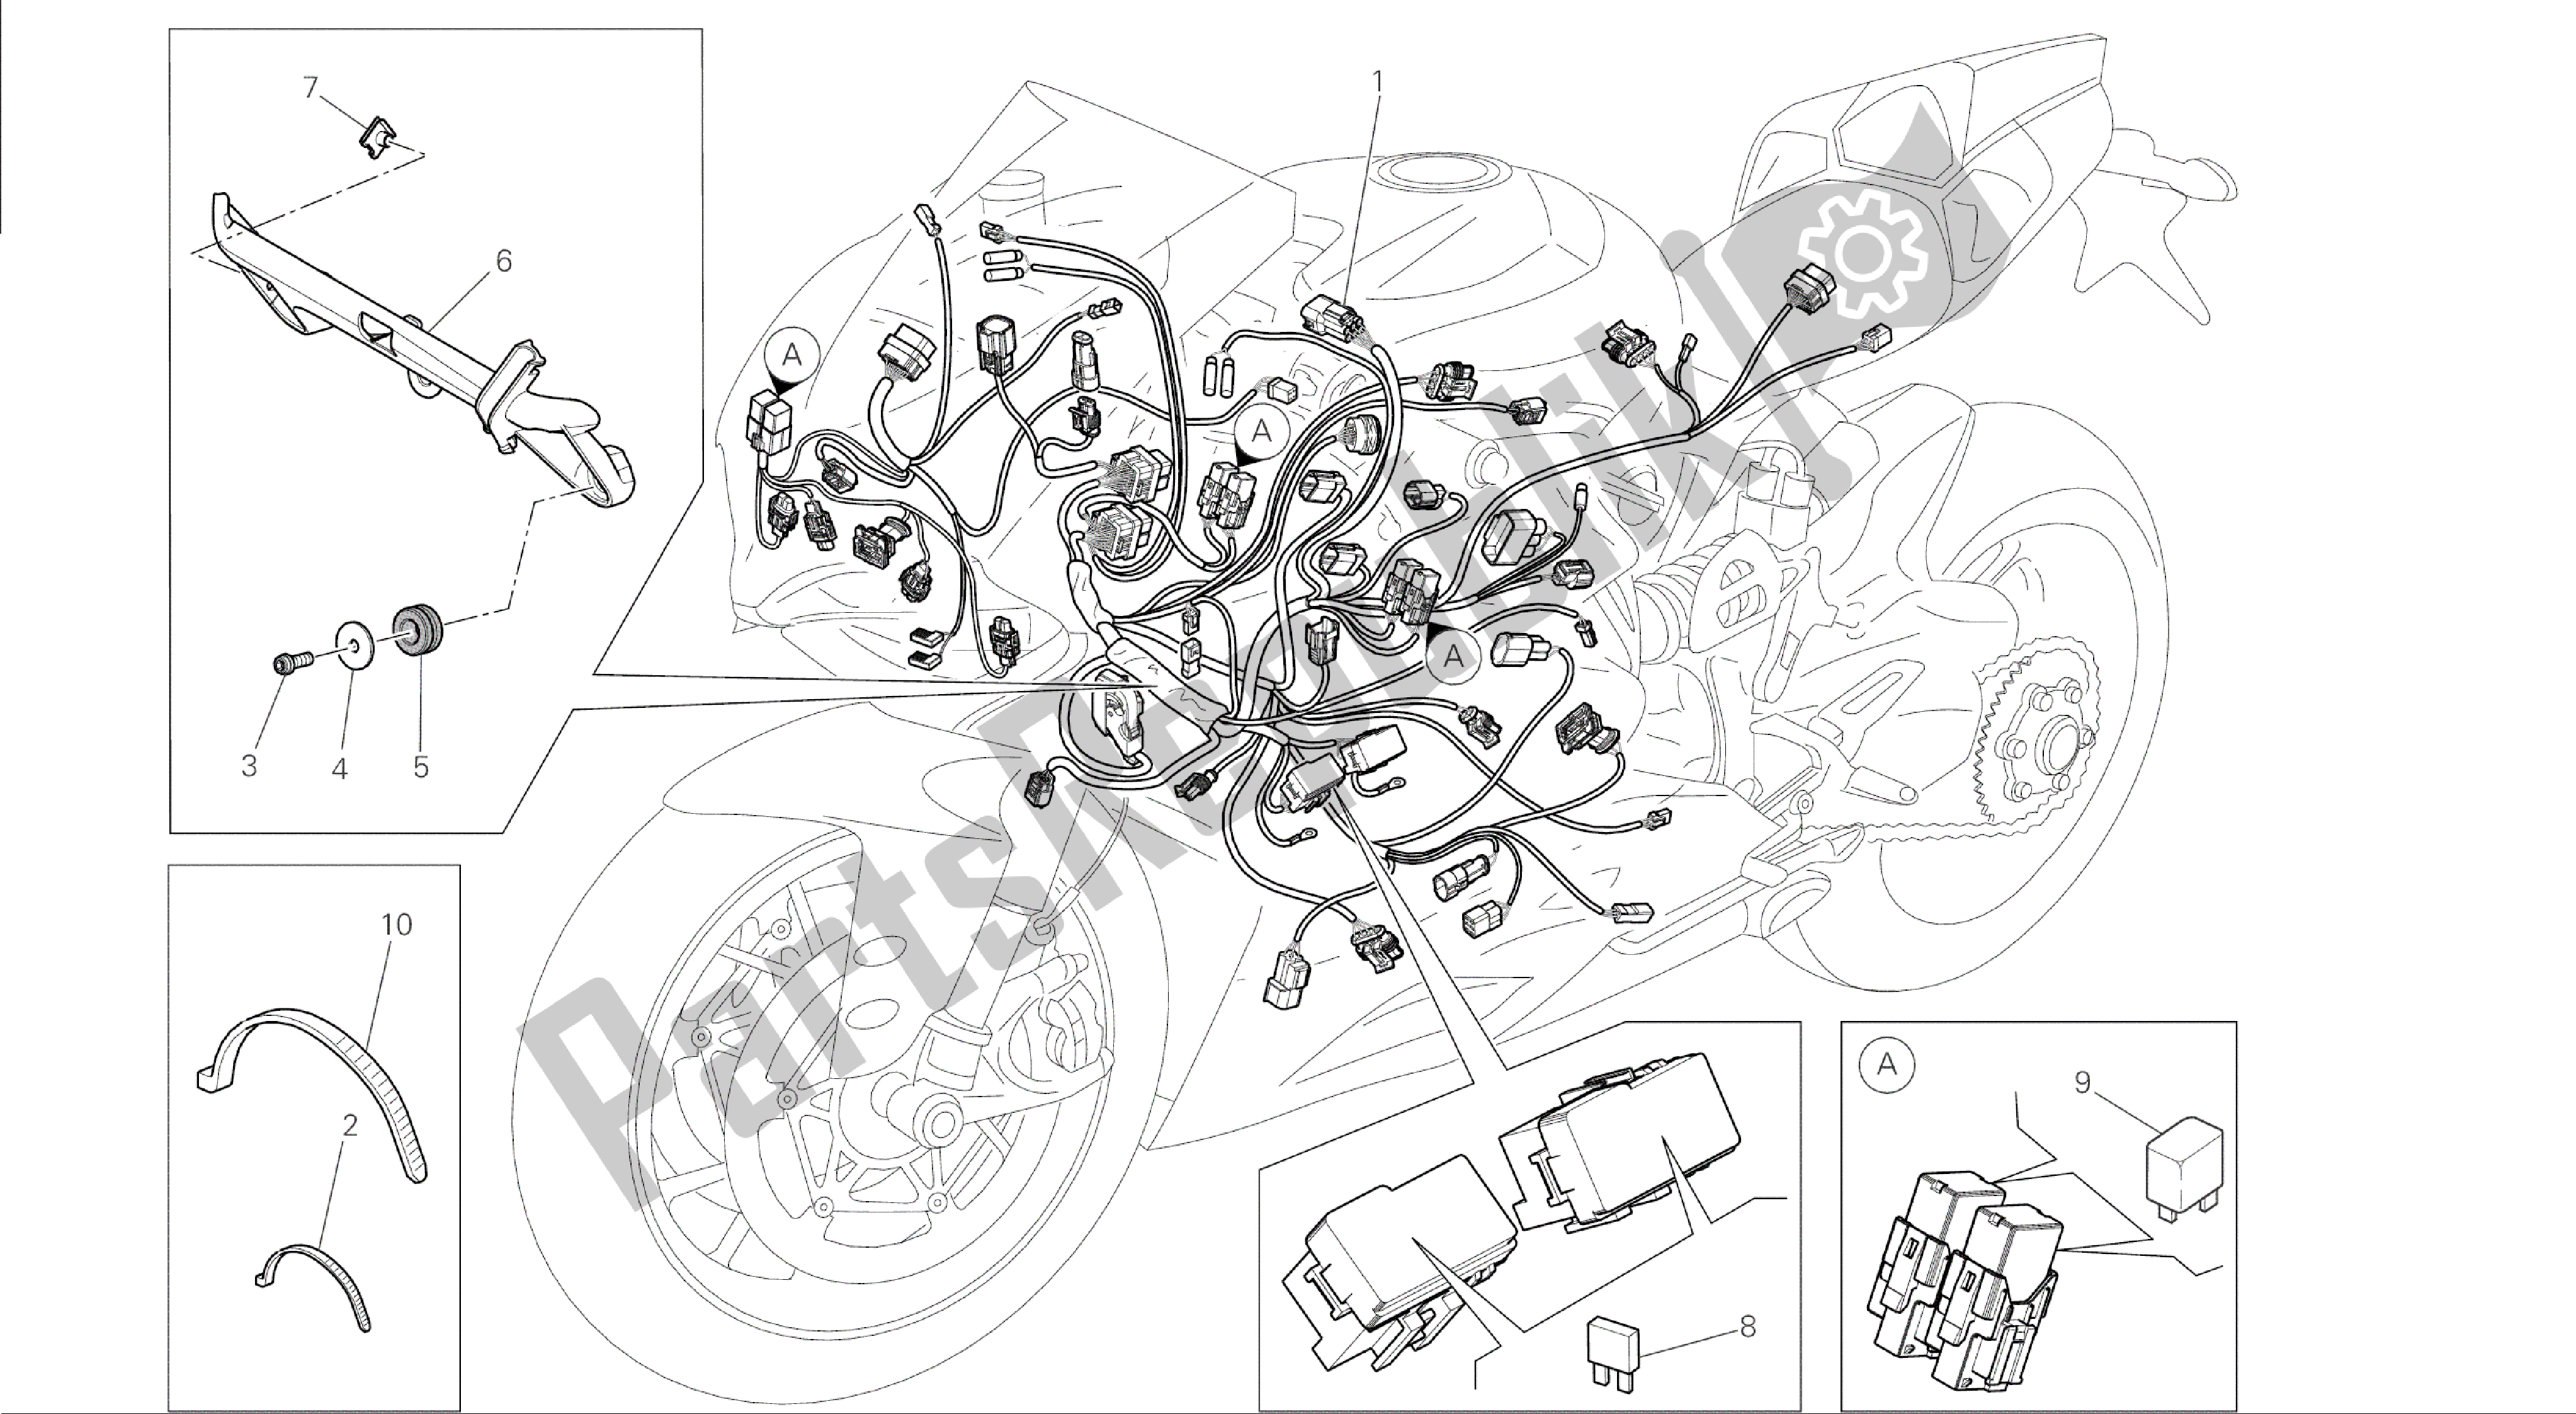 Alle onderdelen voor de Tekening 18c - Kabelboom [mod: 1199 Abs; Xst: Aus, Bra, Chn, Eur, Fra, Jap] Group Electric van de Ducati Panigale ABS 1199 2014